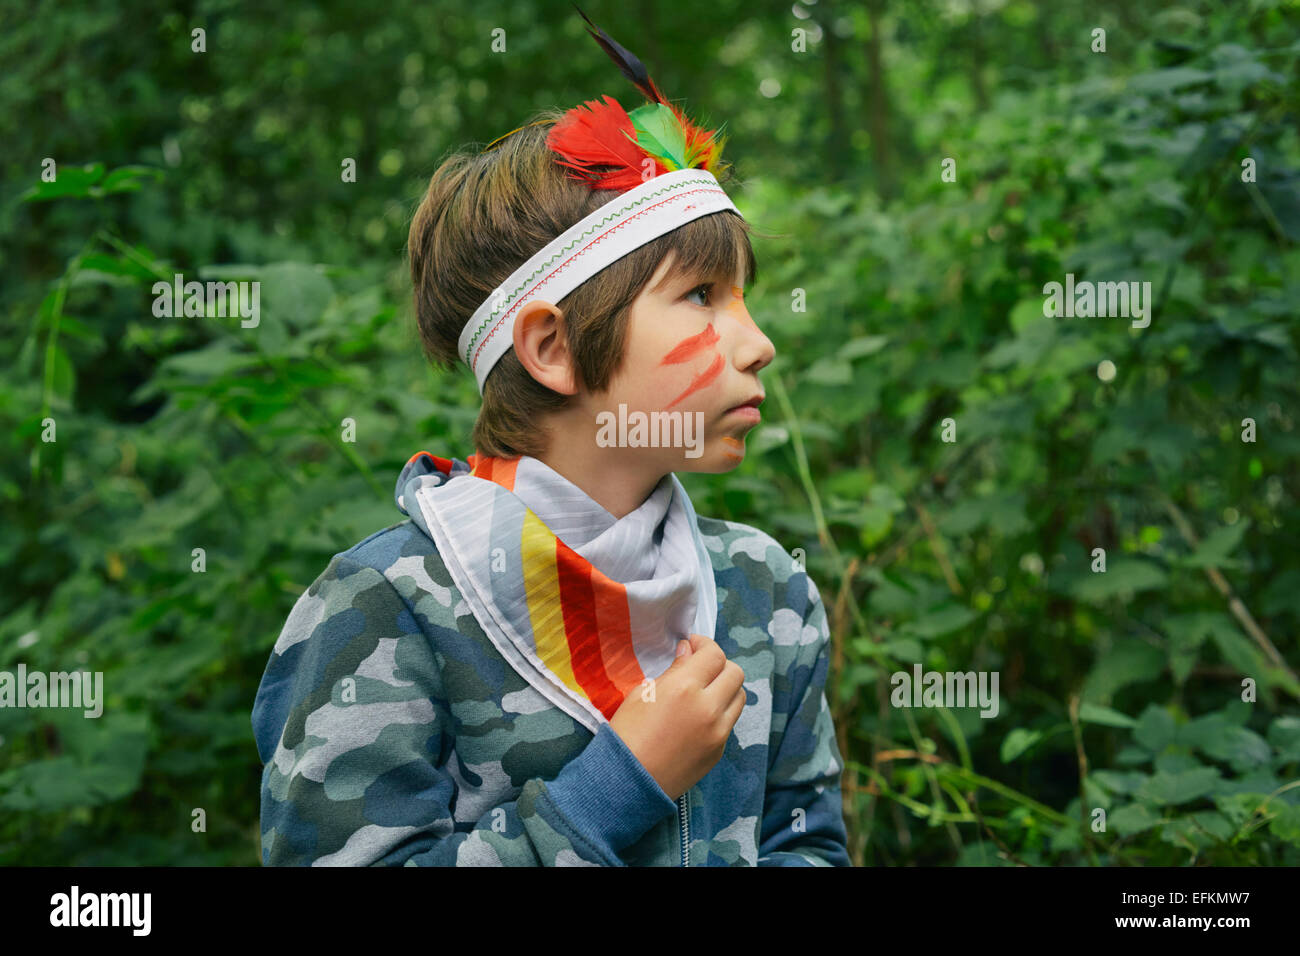 Junge gekleidet in Gesicht malen und spielen im Wald Stockfoto